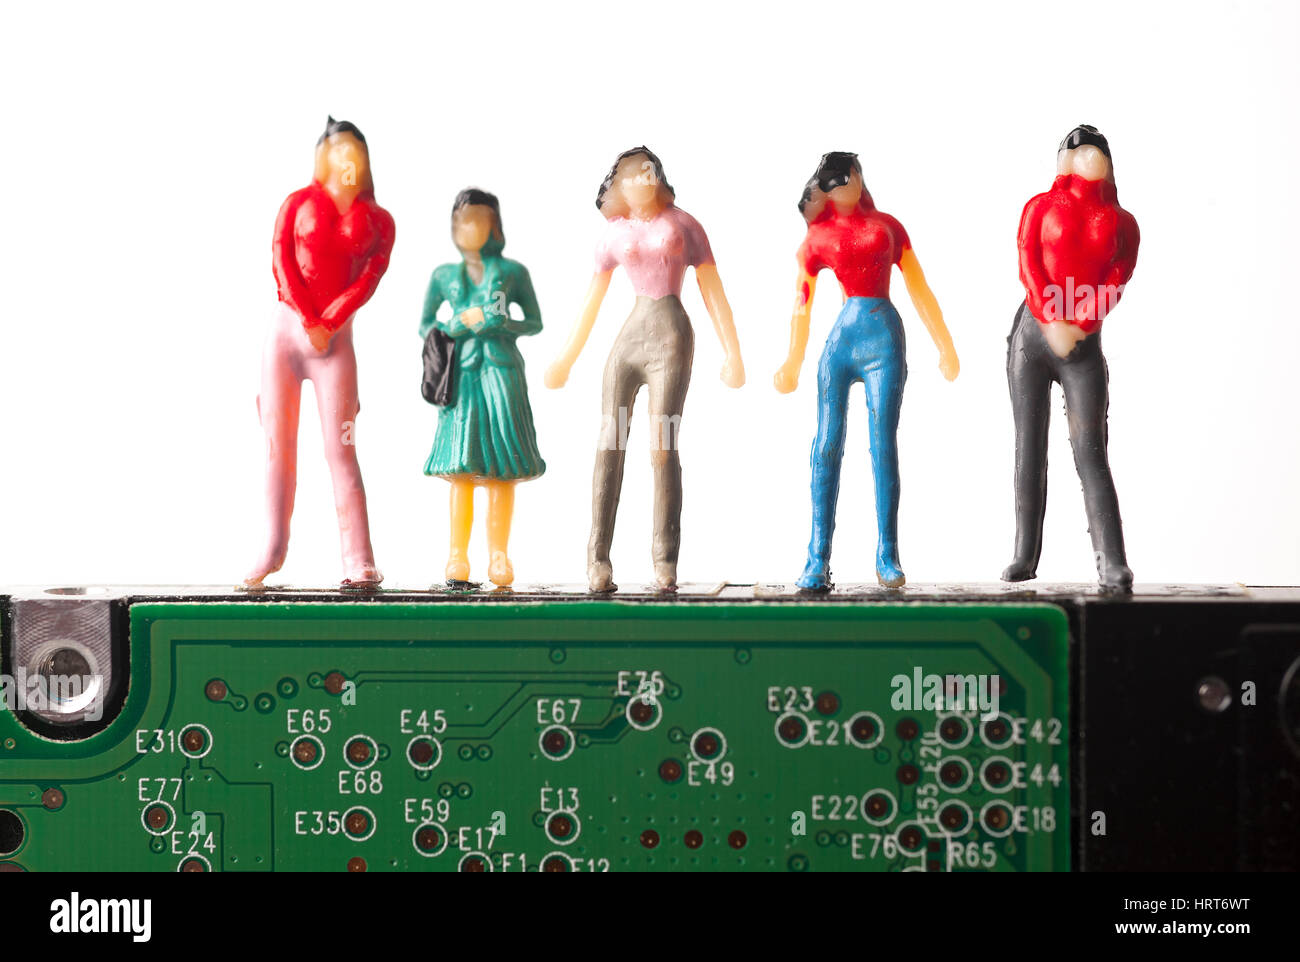 Miniatur-Figuren von Männern in Silhouette stehend auf Festplatte des Computers Stockfoto